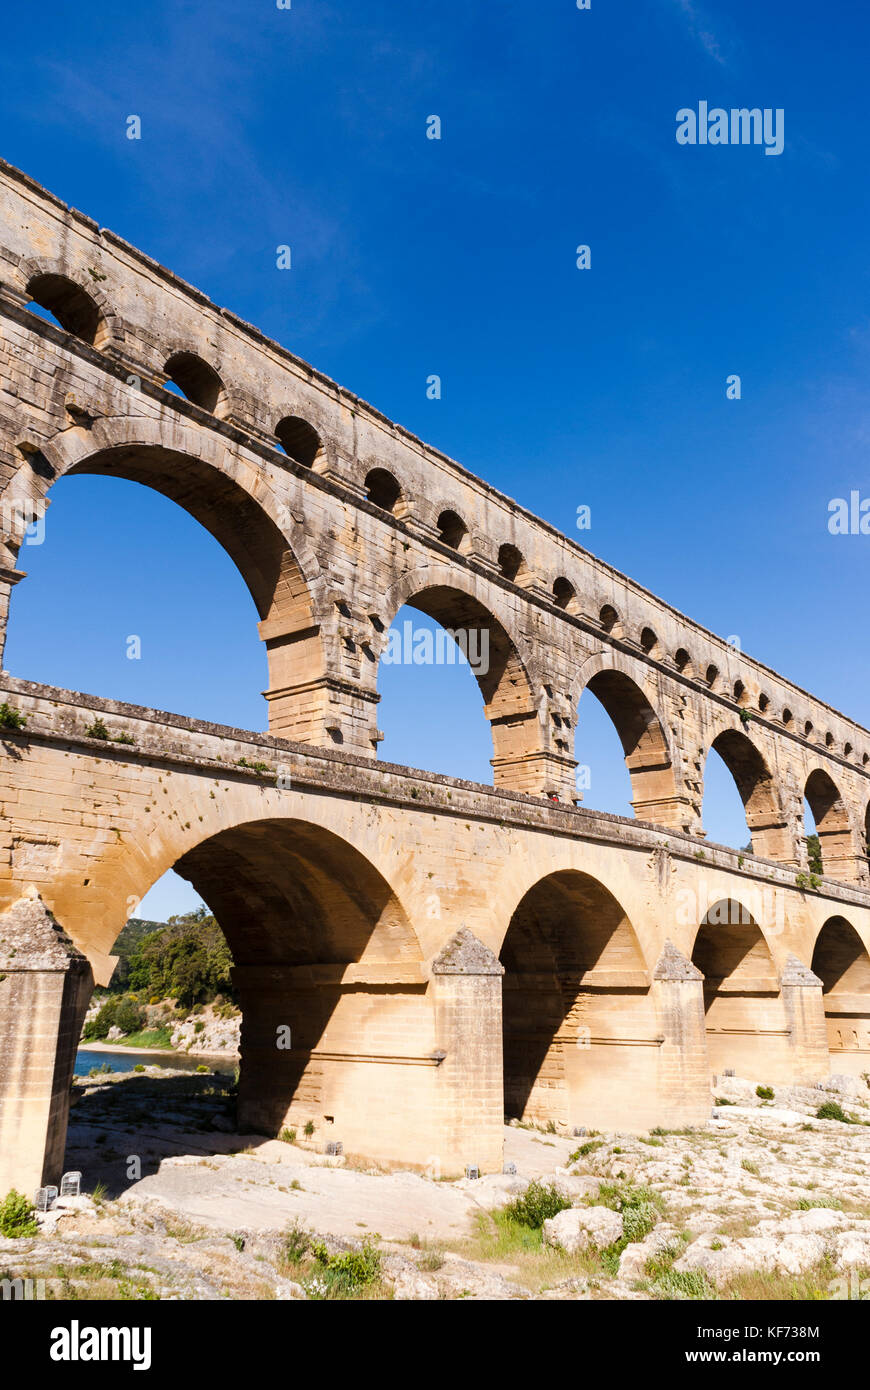 Le Pont du Gard, un aqueduc Romain ancien pont qui traverse la rivière Gard dans le sud de la France. Banque D'Images